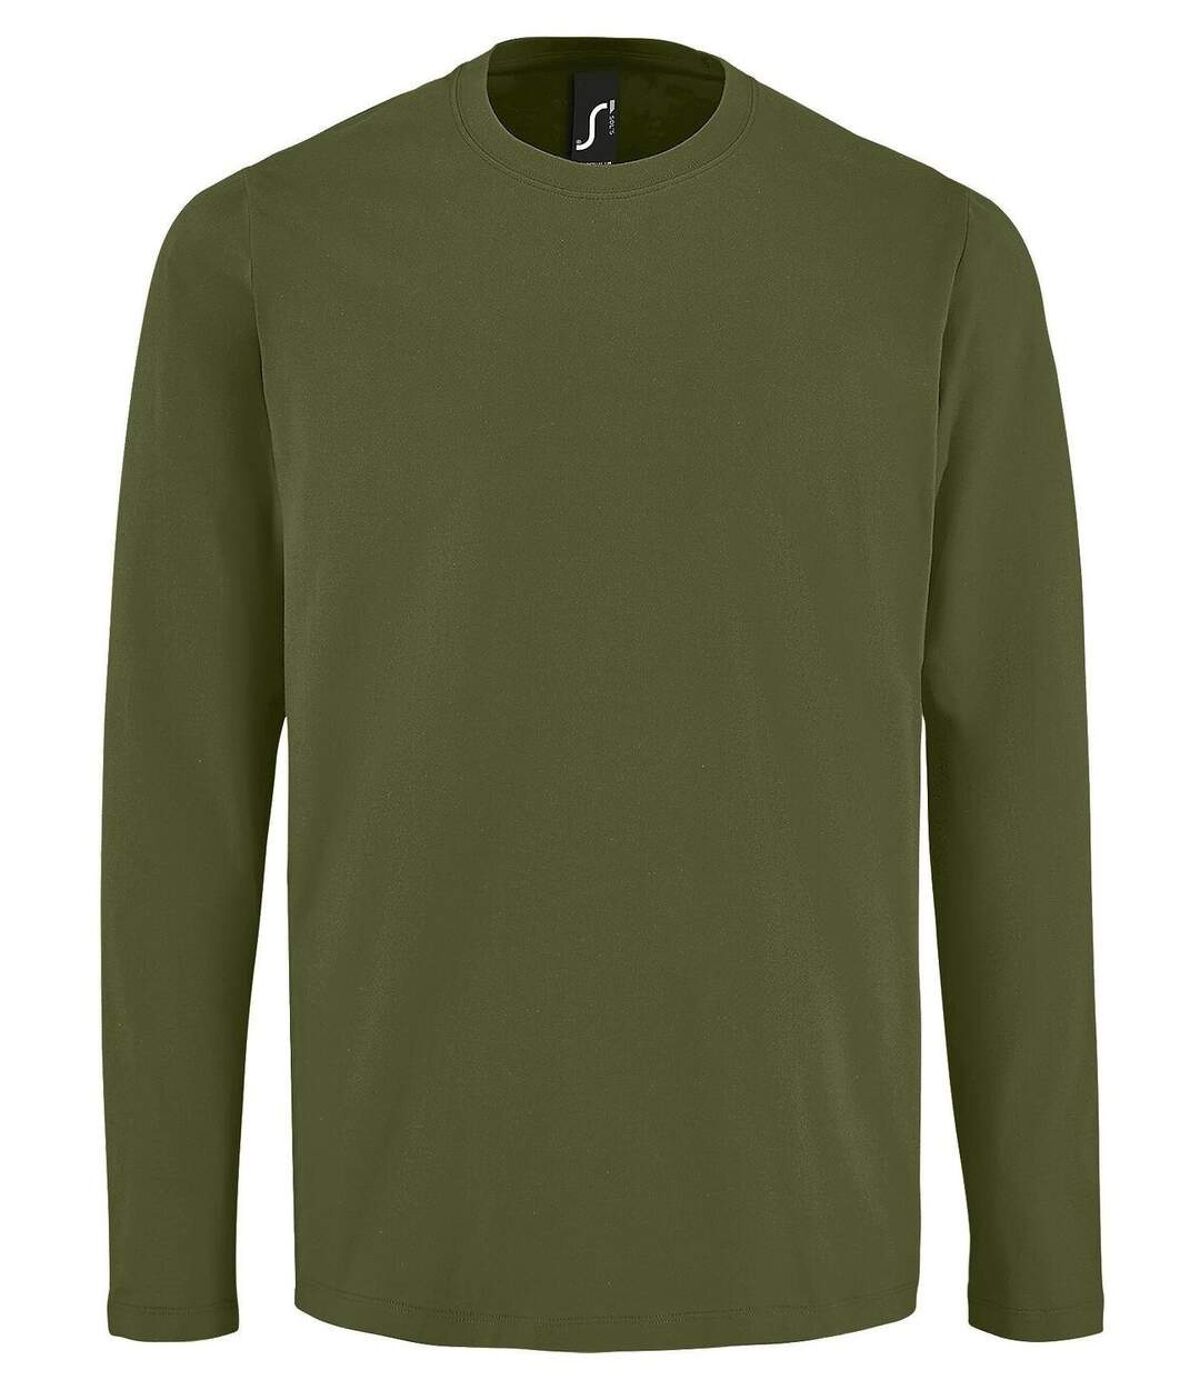 T-shirt manches longues pour homme - 02074 - vert kaki